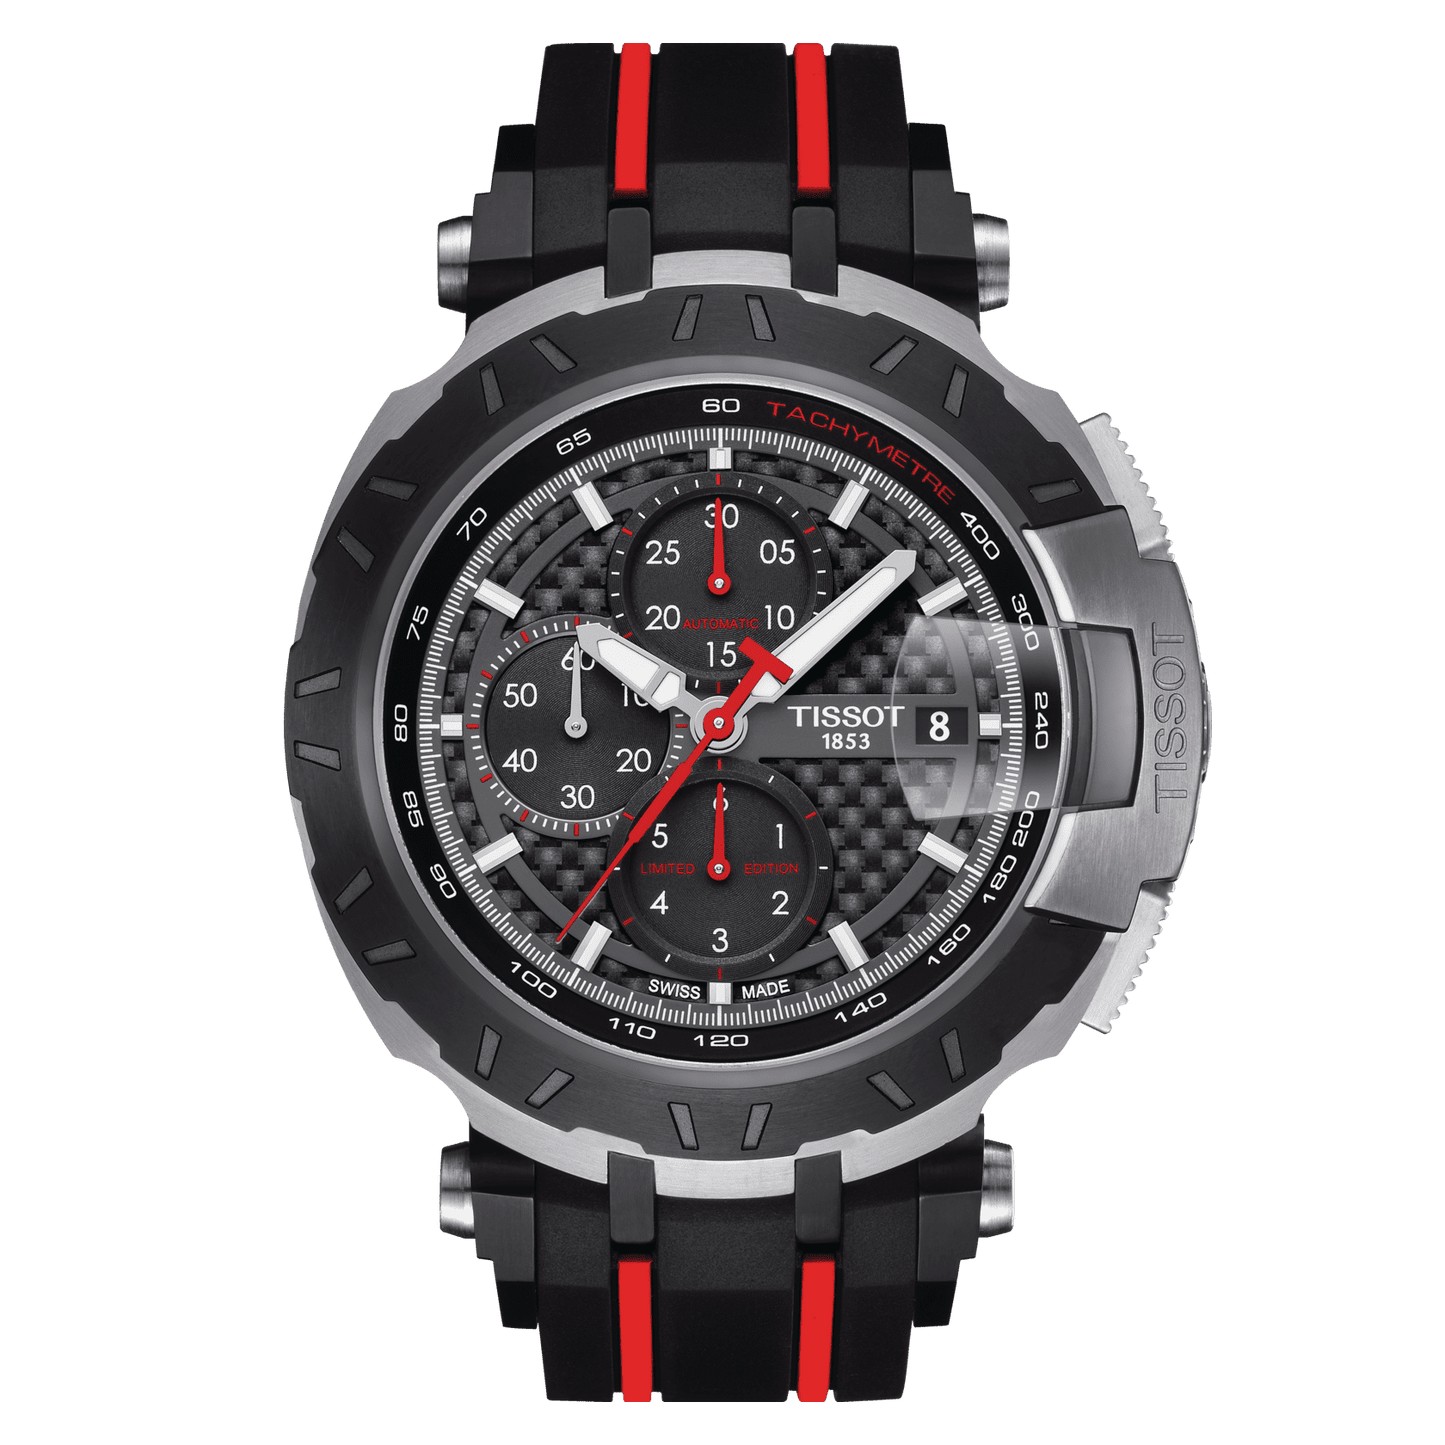 Tissot T-Race MotoGP 2016 Automatic Chronograph